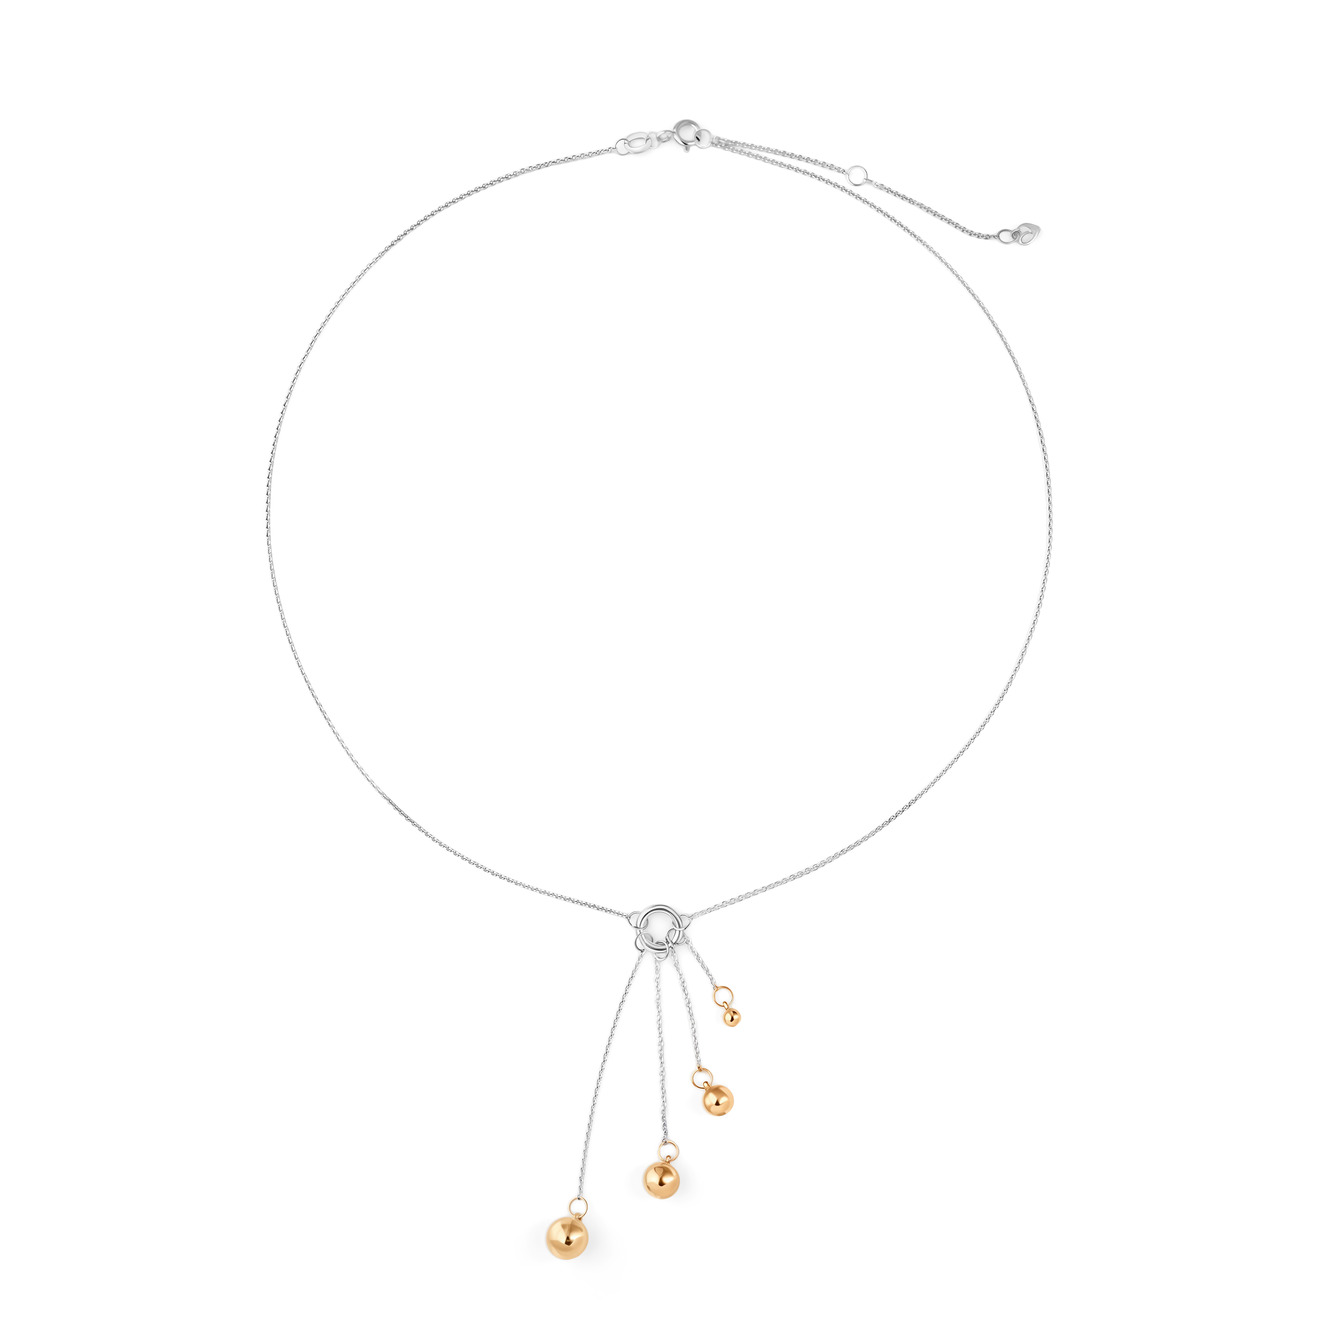 ура jewelry кольцо из серебра с шариками на цепочке УРА jewelry Подвеска Шары из серебра с позолоченными шариками